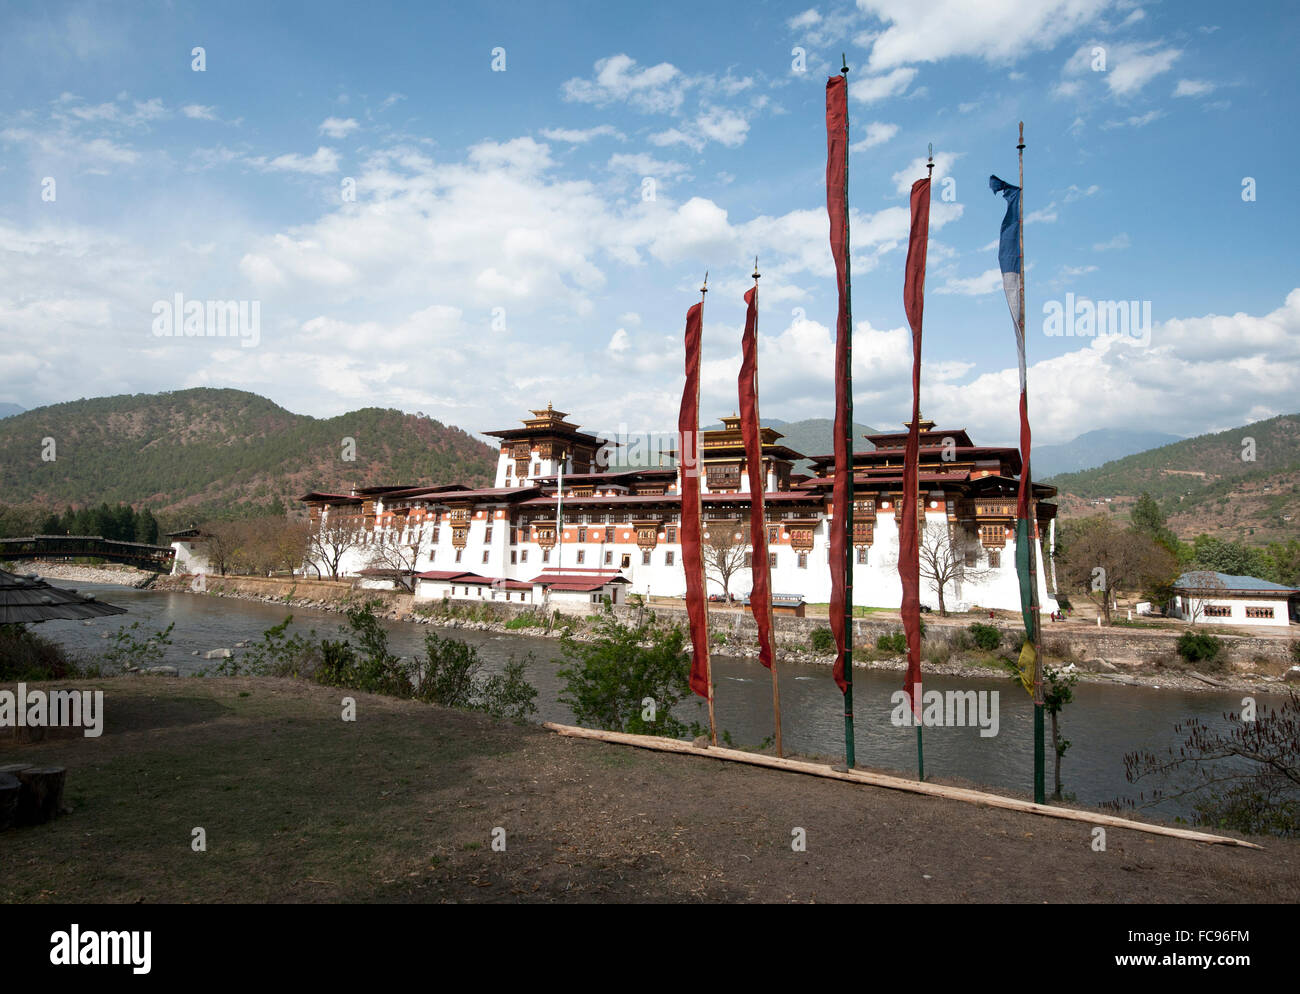 Les drapeaux de prières par Punakha Dzong (monastère), à la confluence de la Pho Chu (père) et Mo Chu (mère), rivières Punakha, Bhoutan Banque D'Images